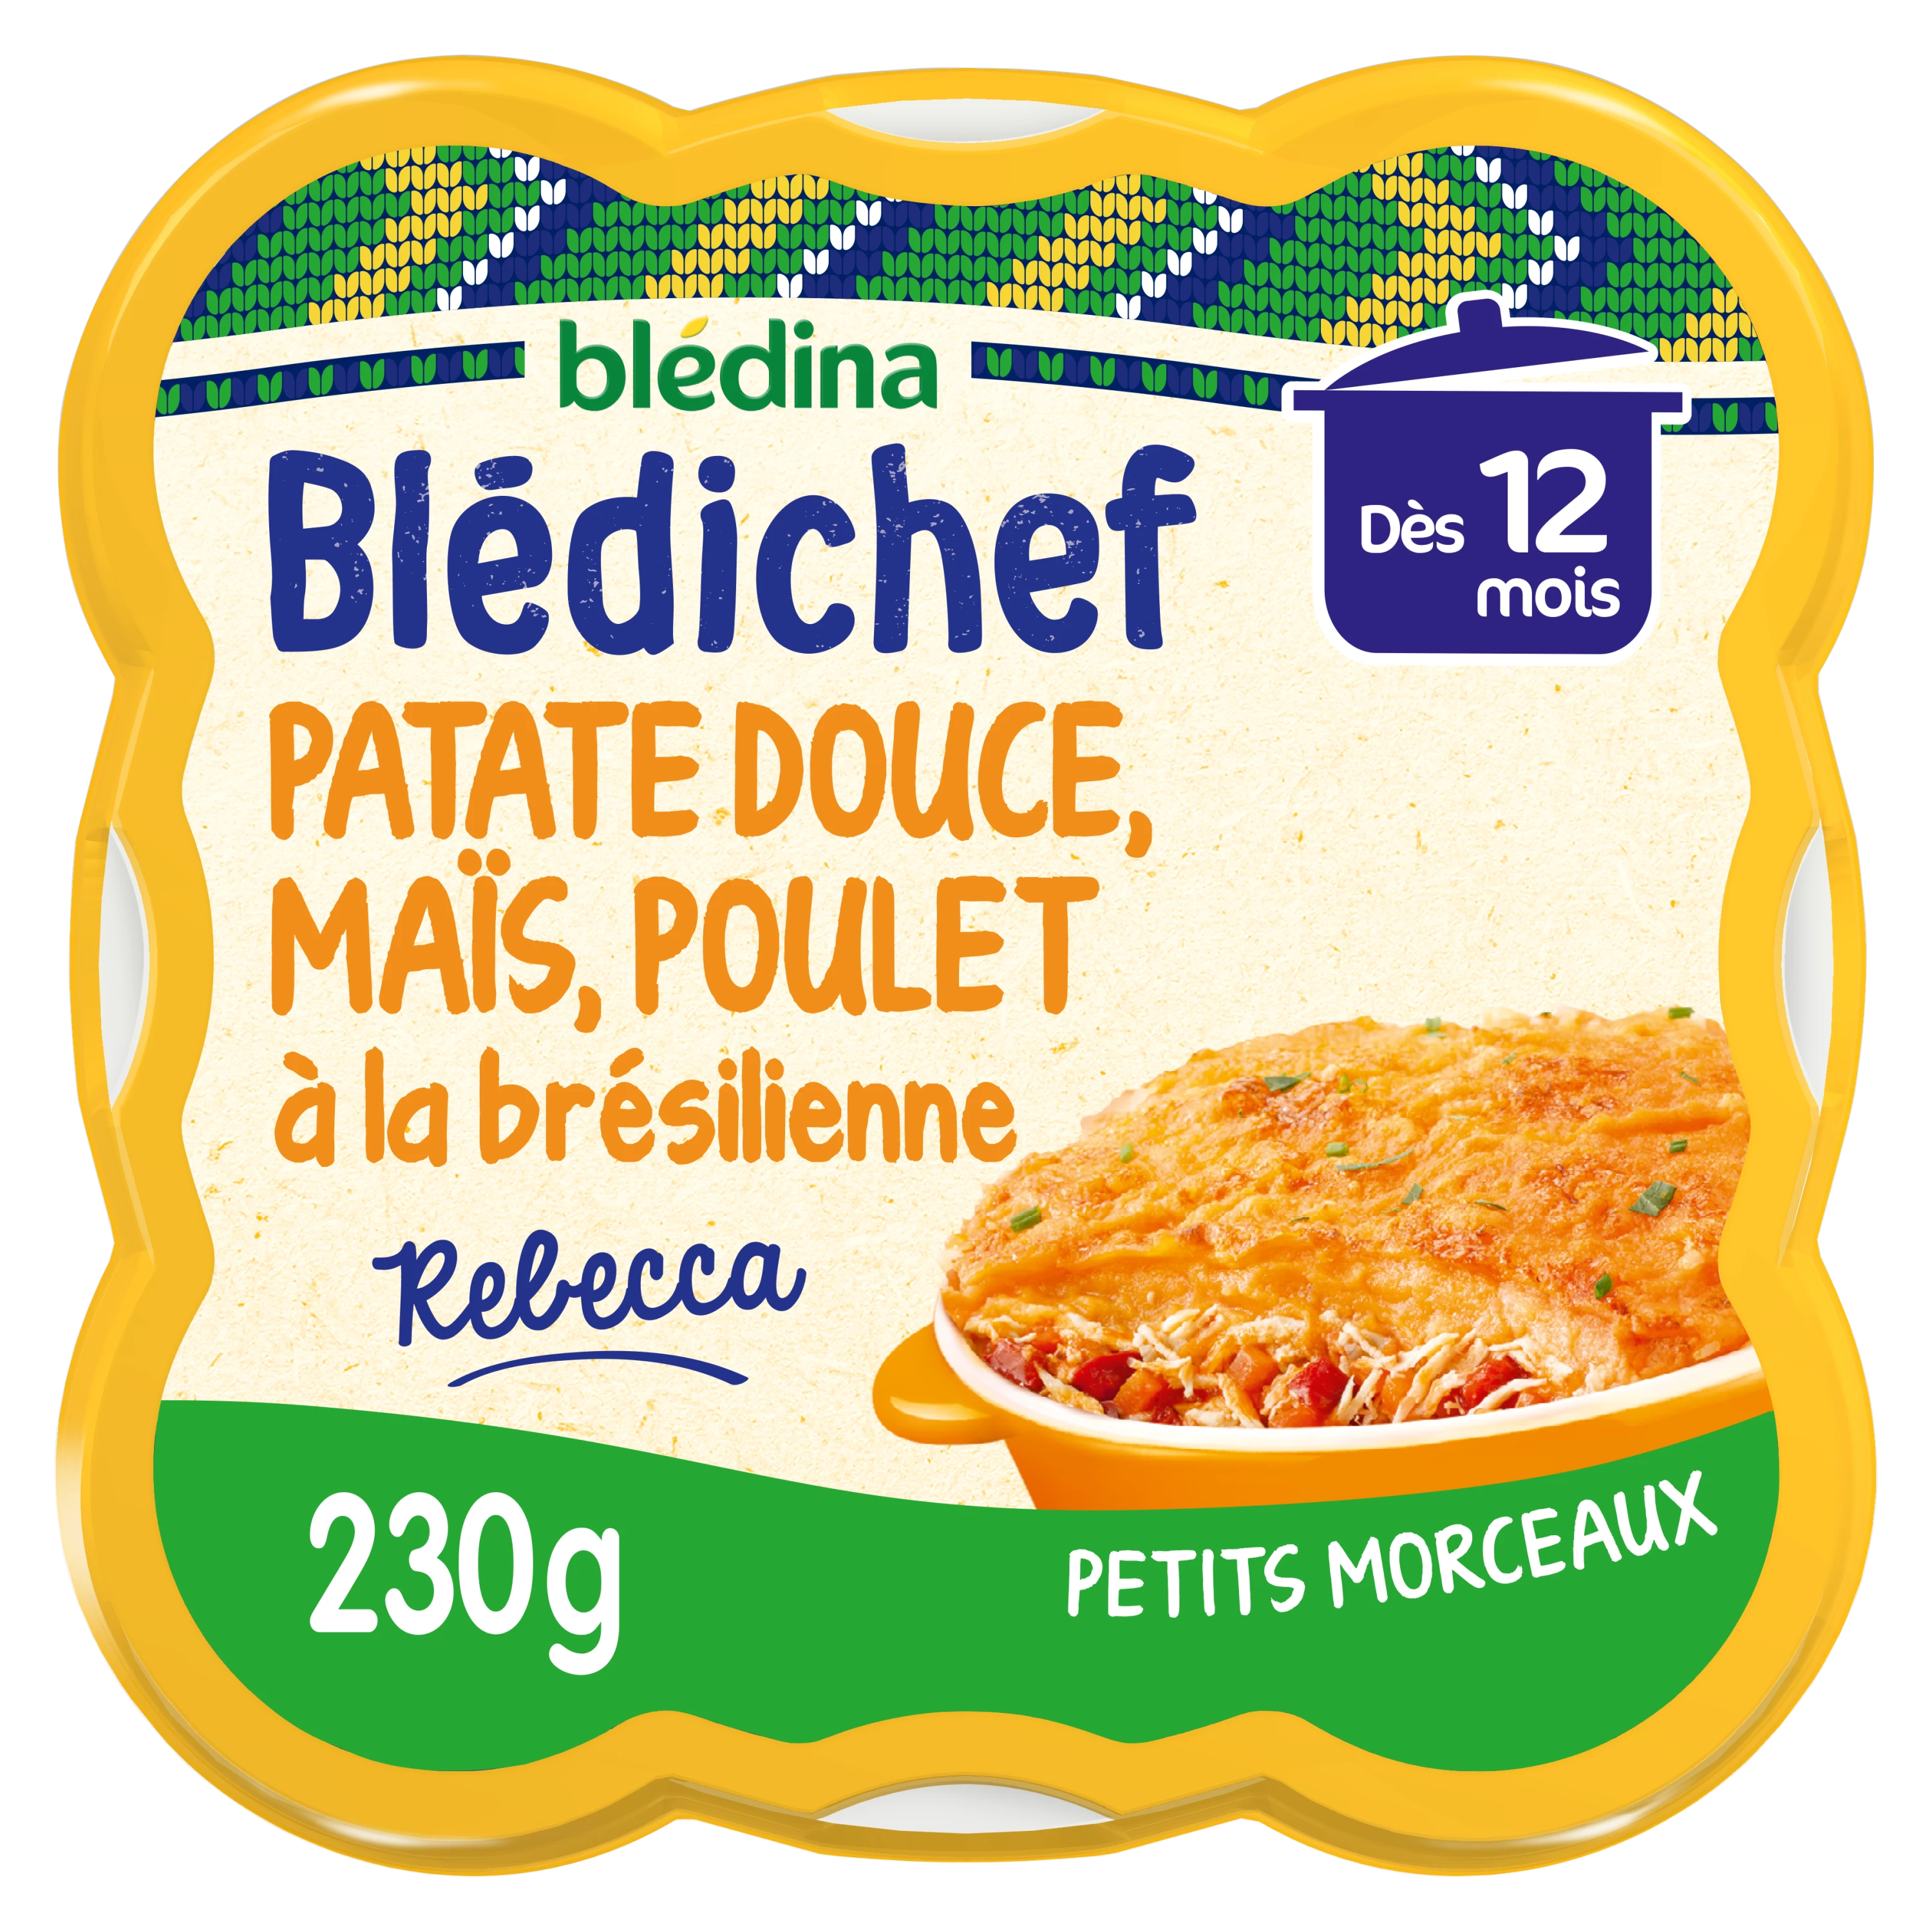 Blédichef Plat bébé dès 12 mois purée de patates douces maïs et poulet  230g - BLEDINA